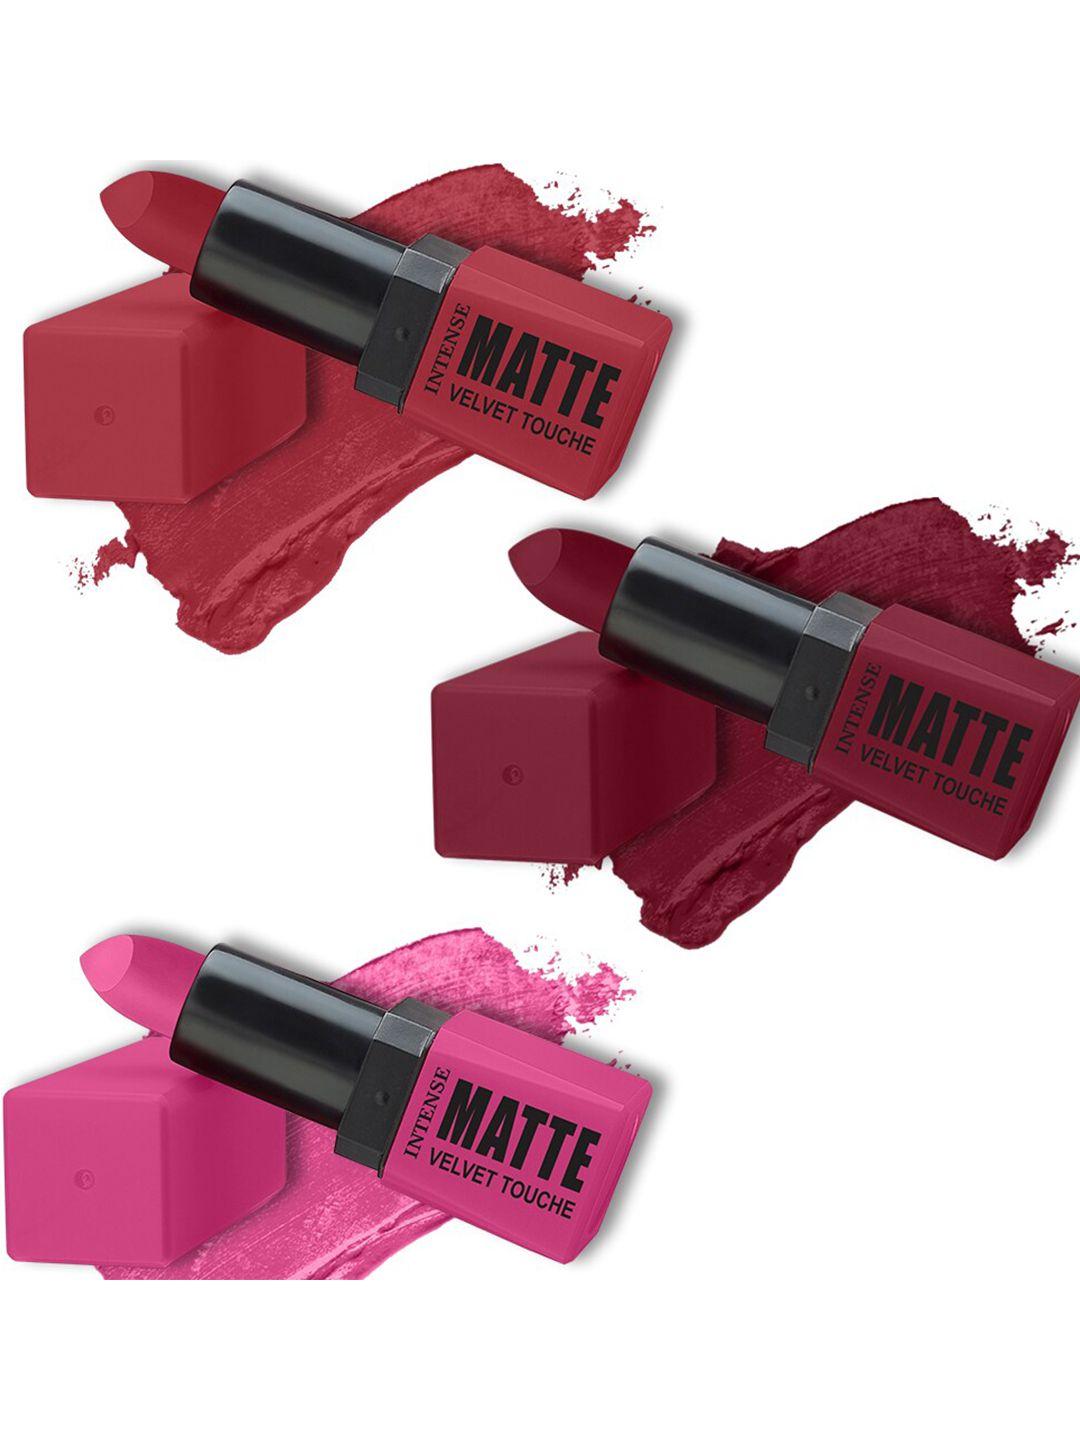 forsure set of 3 intense matte velvet touche lipsticks 3.5g each - shade 309, 304, 303